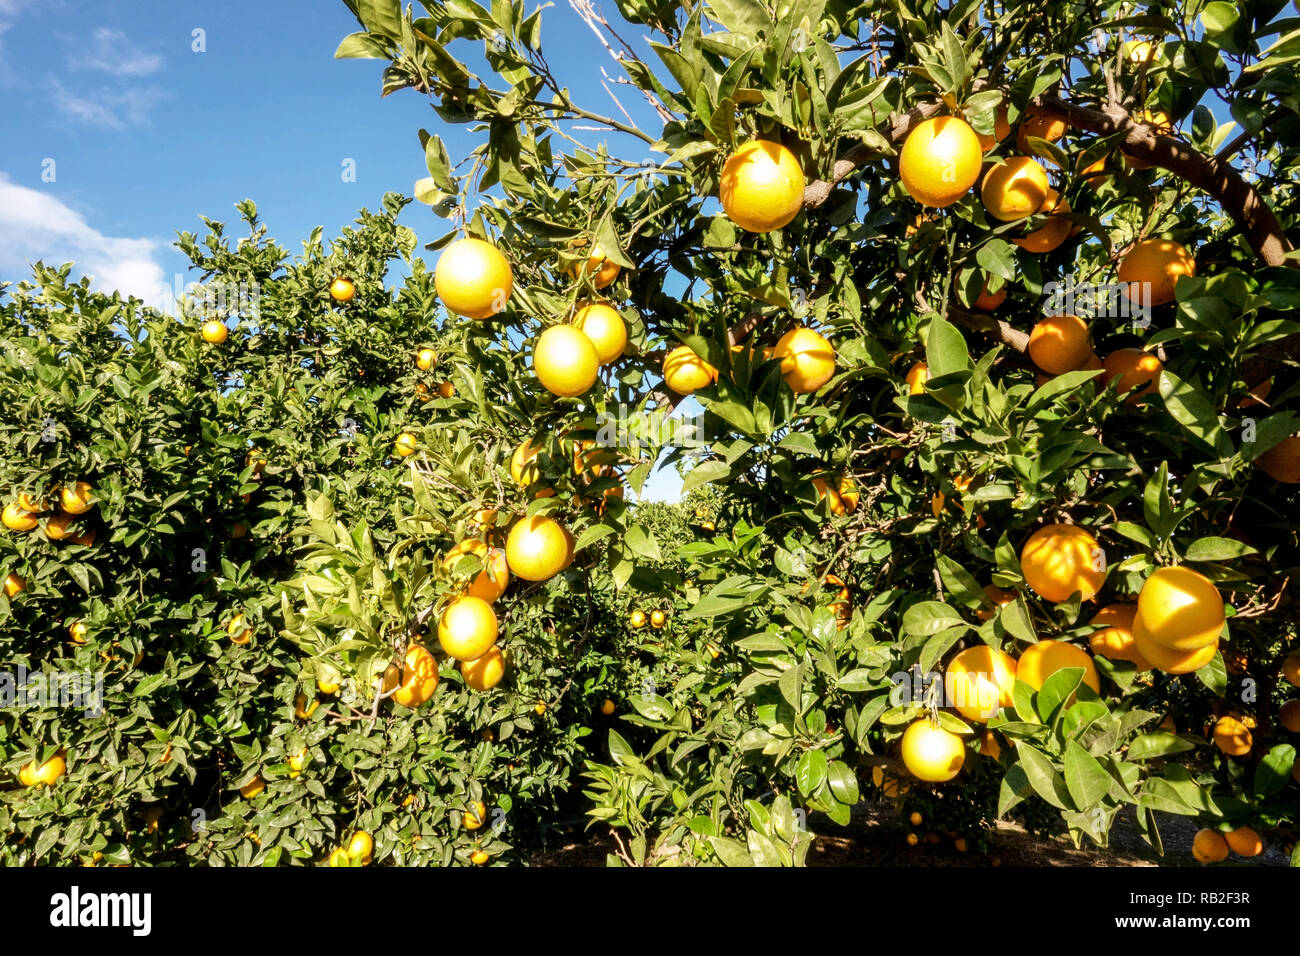 Oranges on trees, Valencia Spain Stock Photo